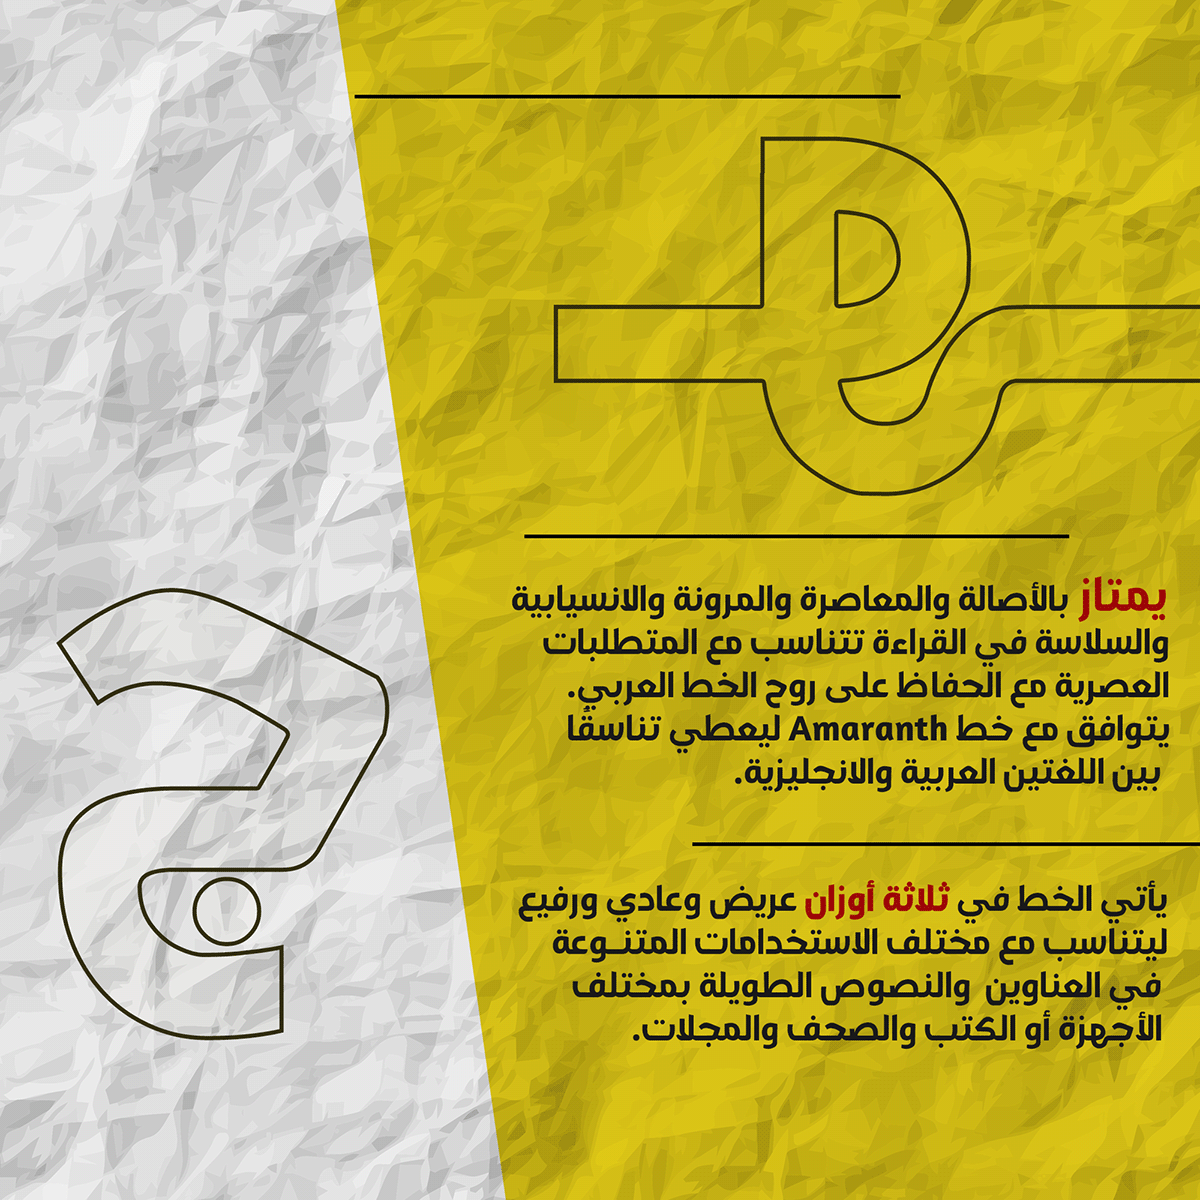 DG Sahabah Free Font - arabic